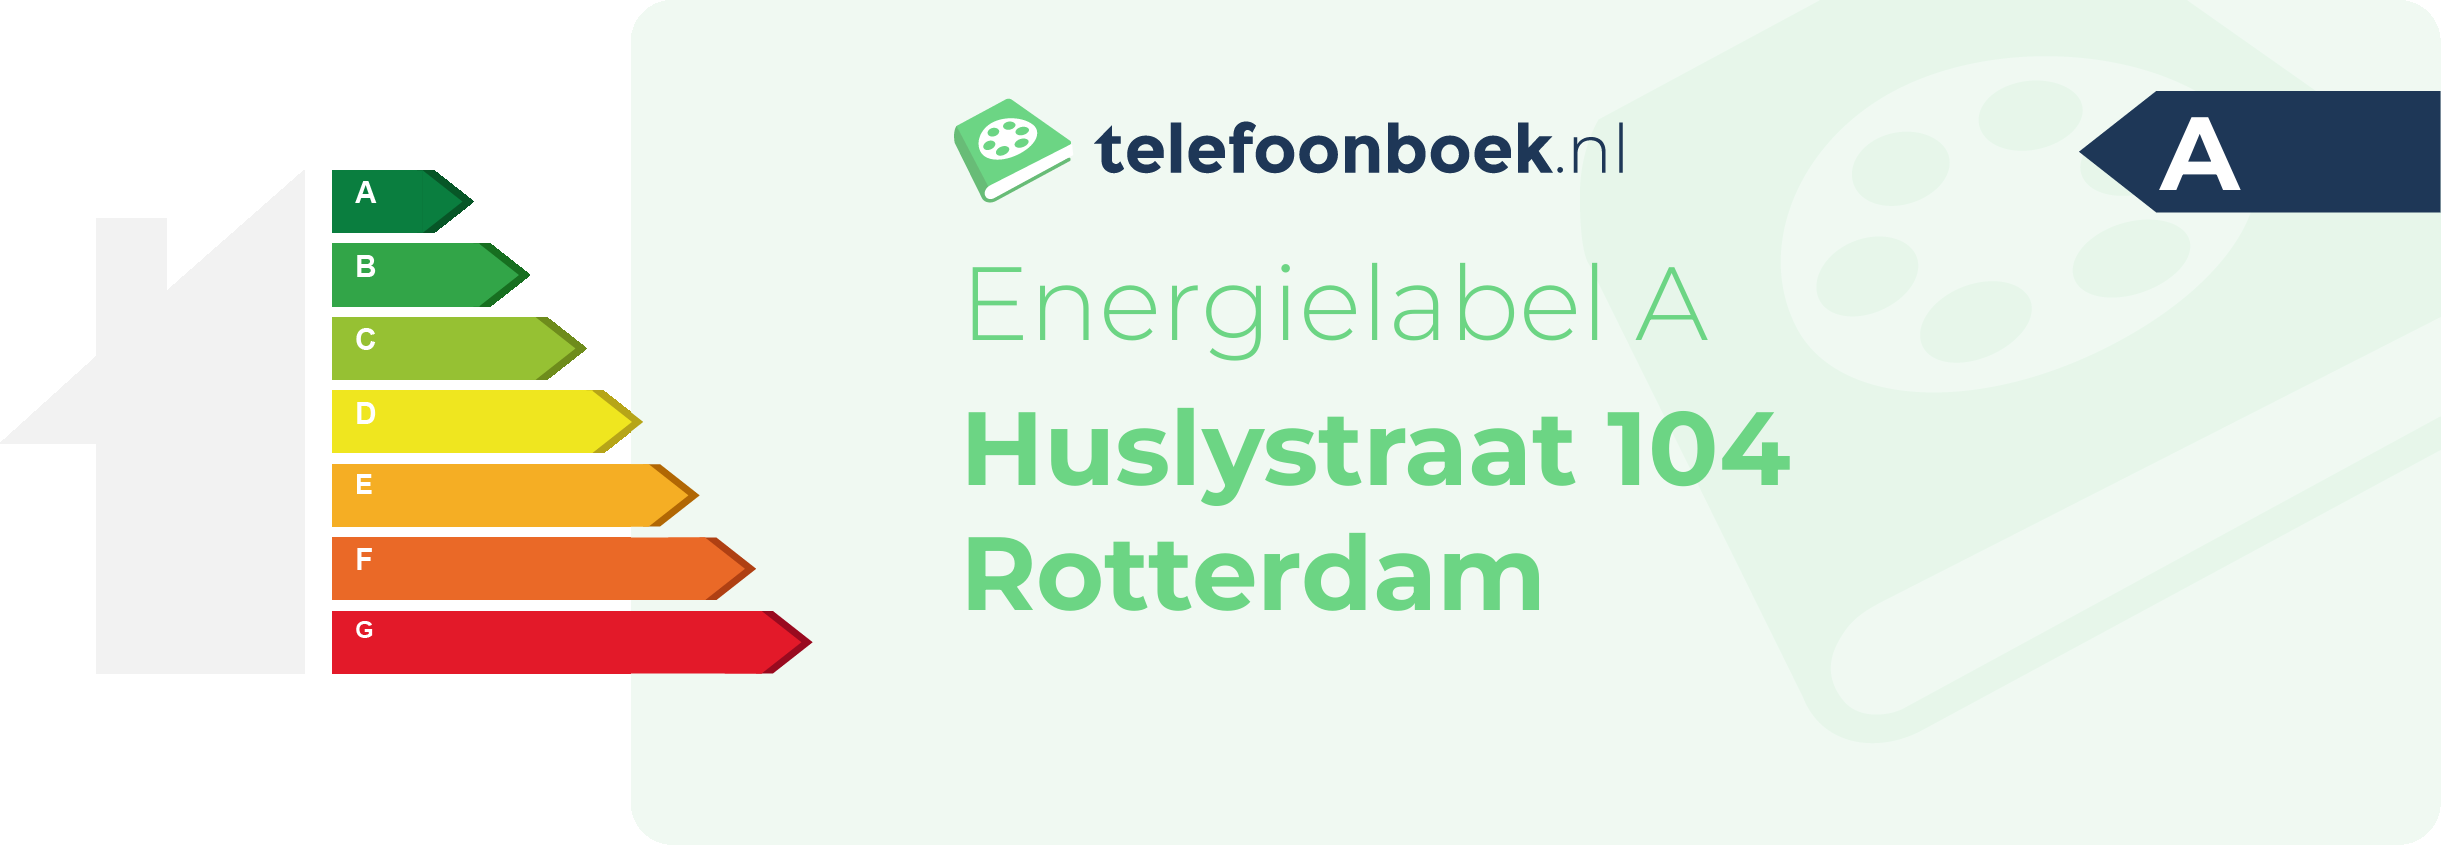 Energielabel Huslystraat 104 Rotterdam